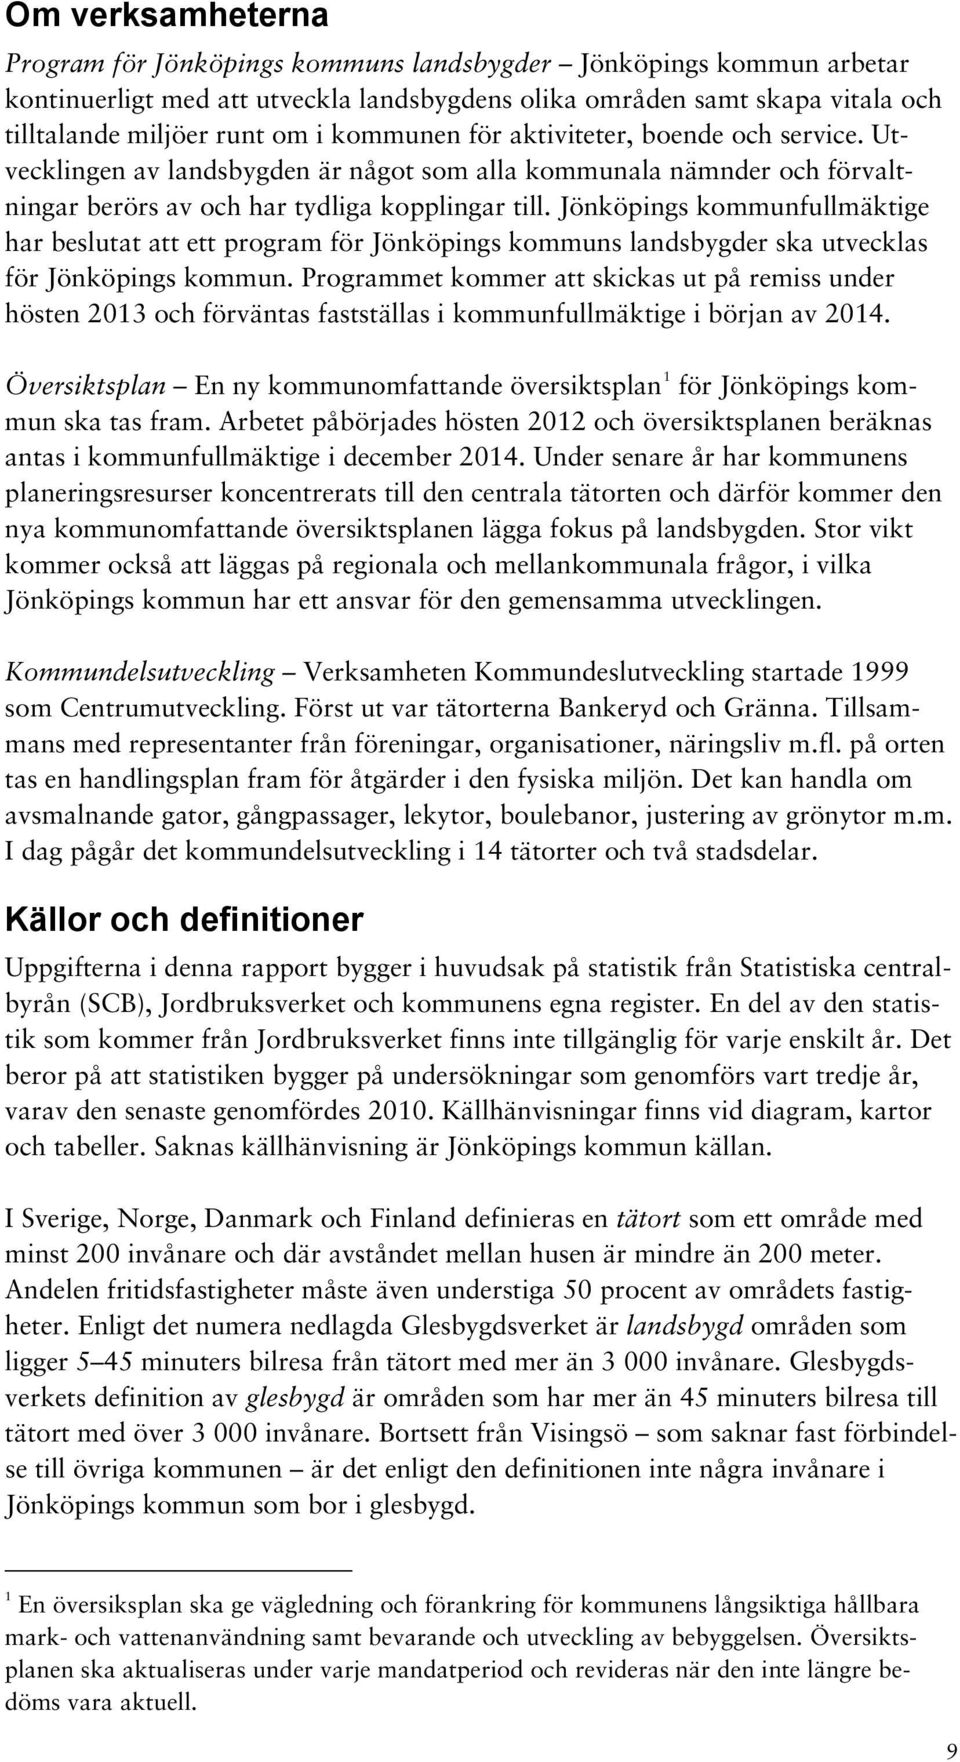 Jönköpings kommunfullmäktige har beslutat att ett program för Jönköpings kommuns landsbygder ska utvecklas för Jönköpings kommun.